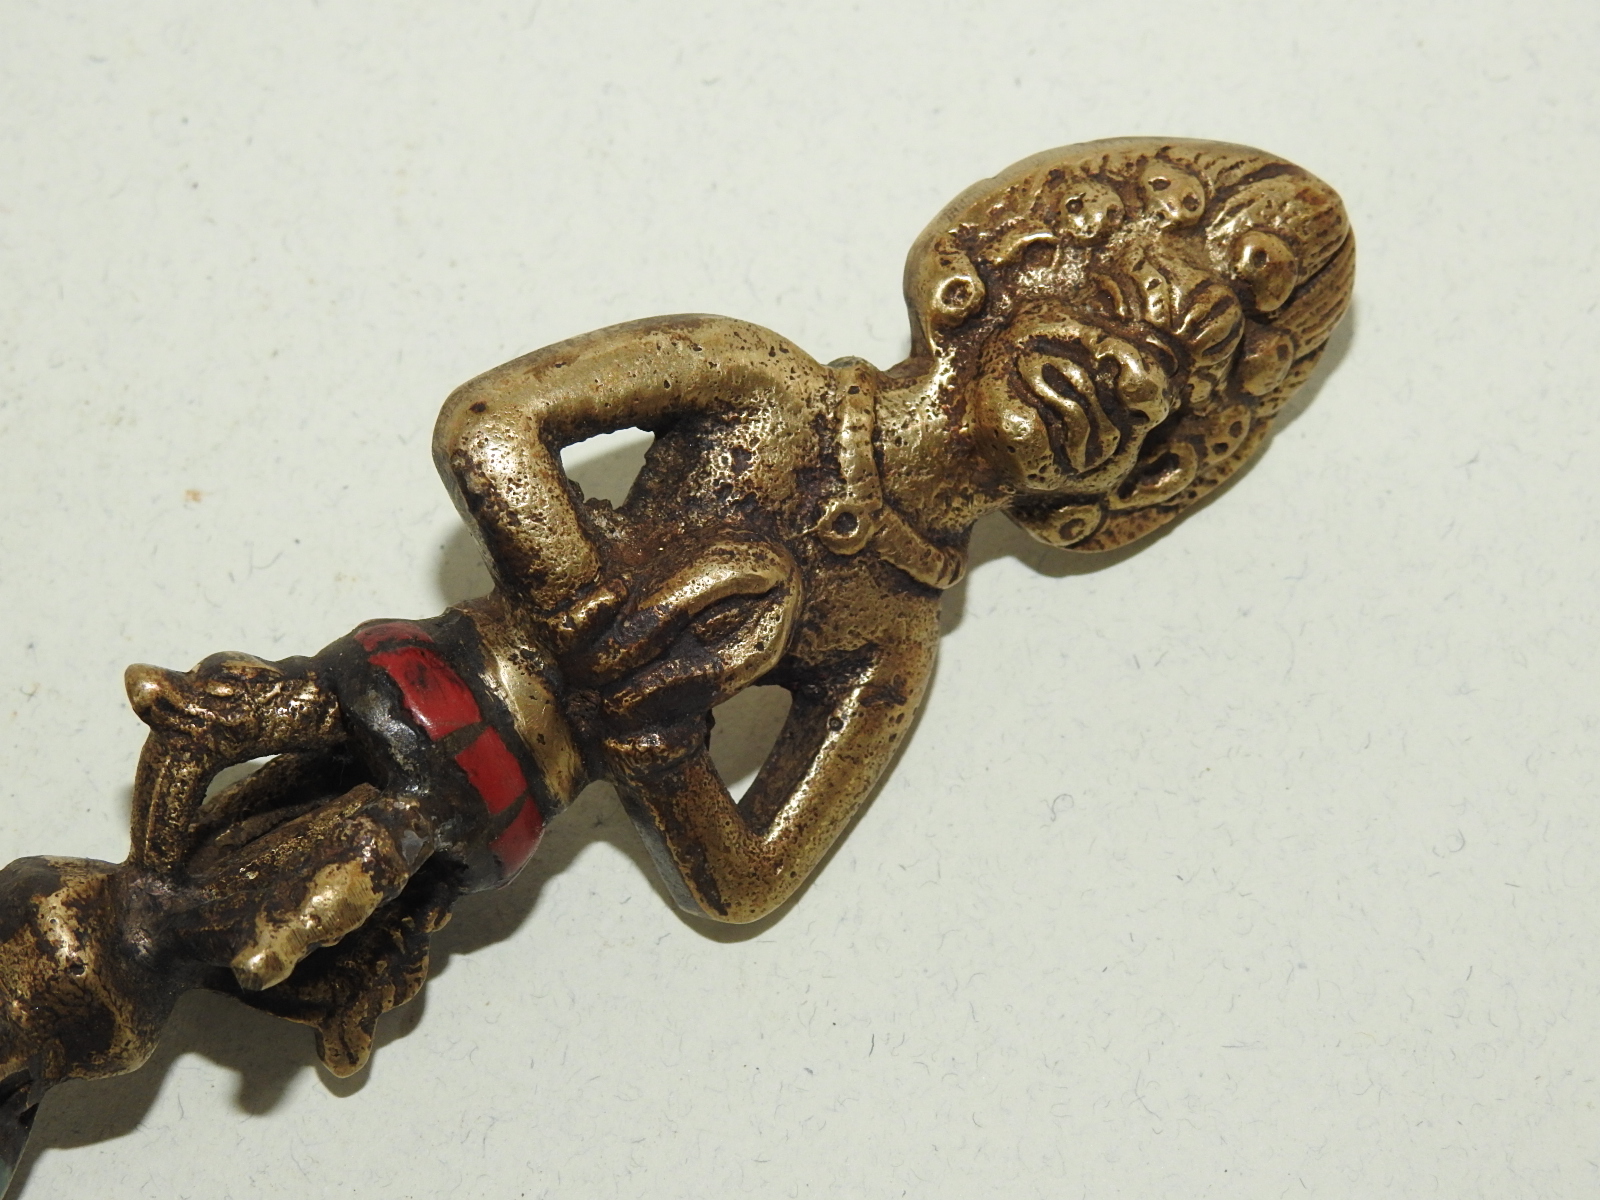 청동으로된 터키석이 장식된 티벳불구